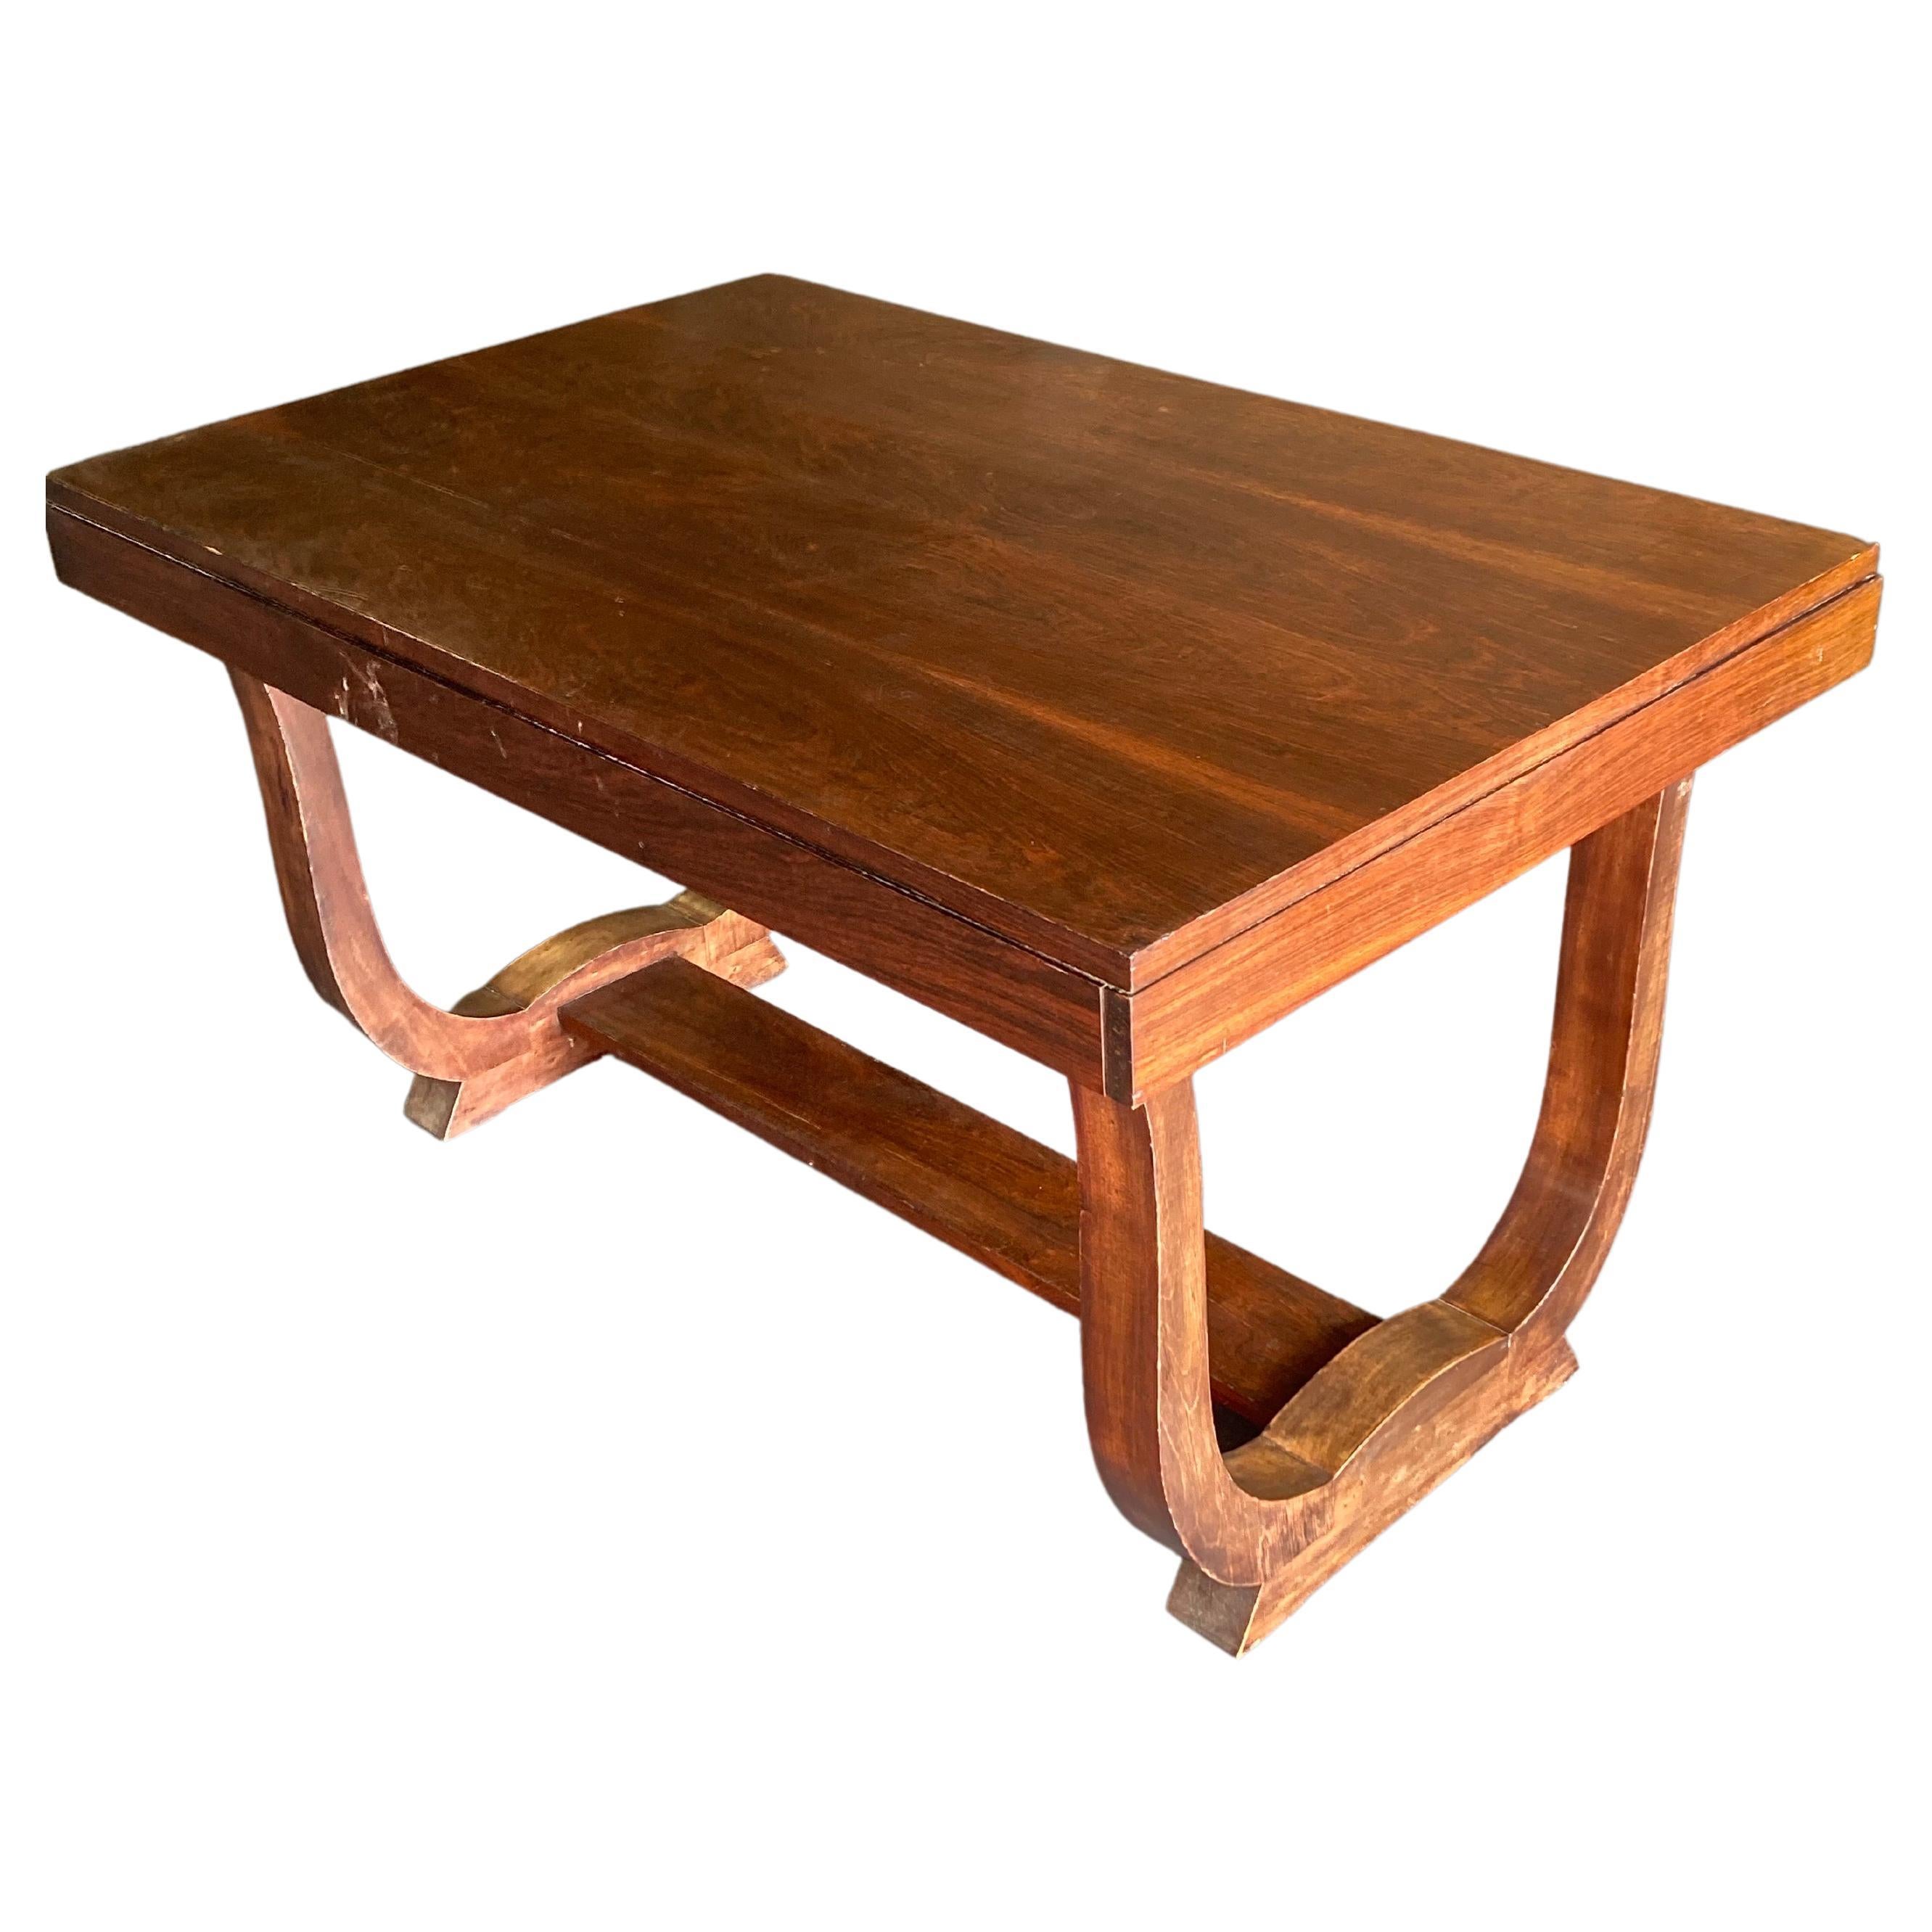 Cette table a été fabriquée par la Maison Dominique, en France, vers 1930. Il s'agit d'une table polyvalente qui peut être utilisée comme table de salle à manger occasionnelle ou comme table de hall d'entrée.

Andre Domin & Marcel Genevriere créent